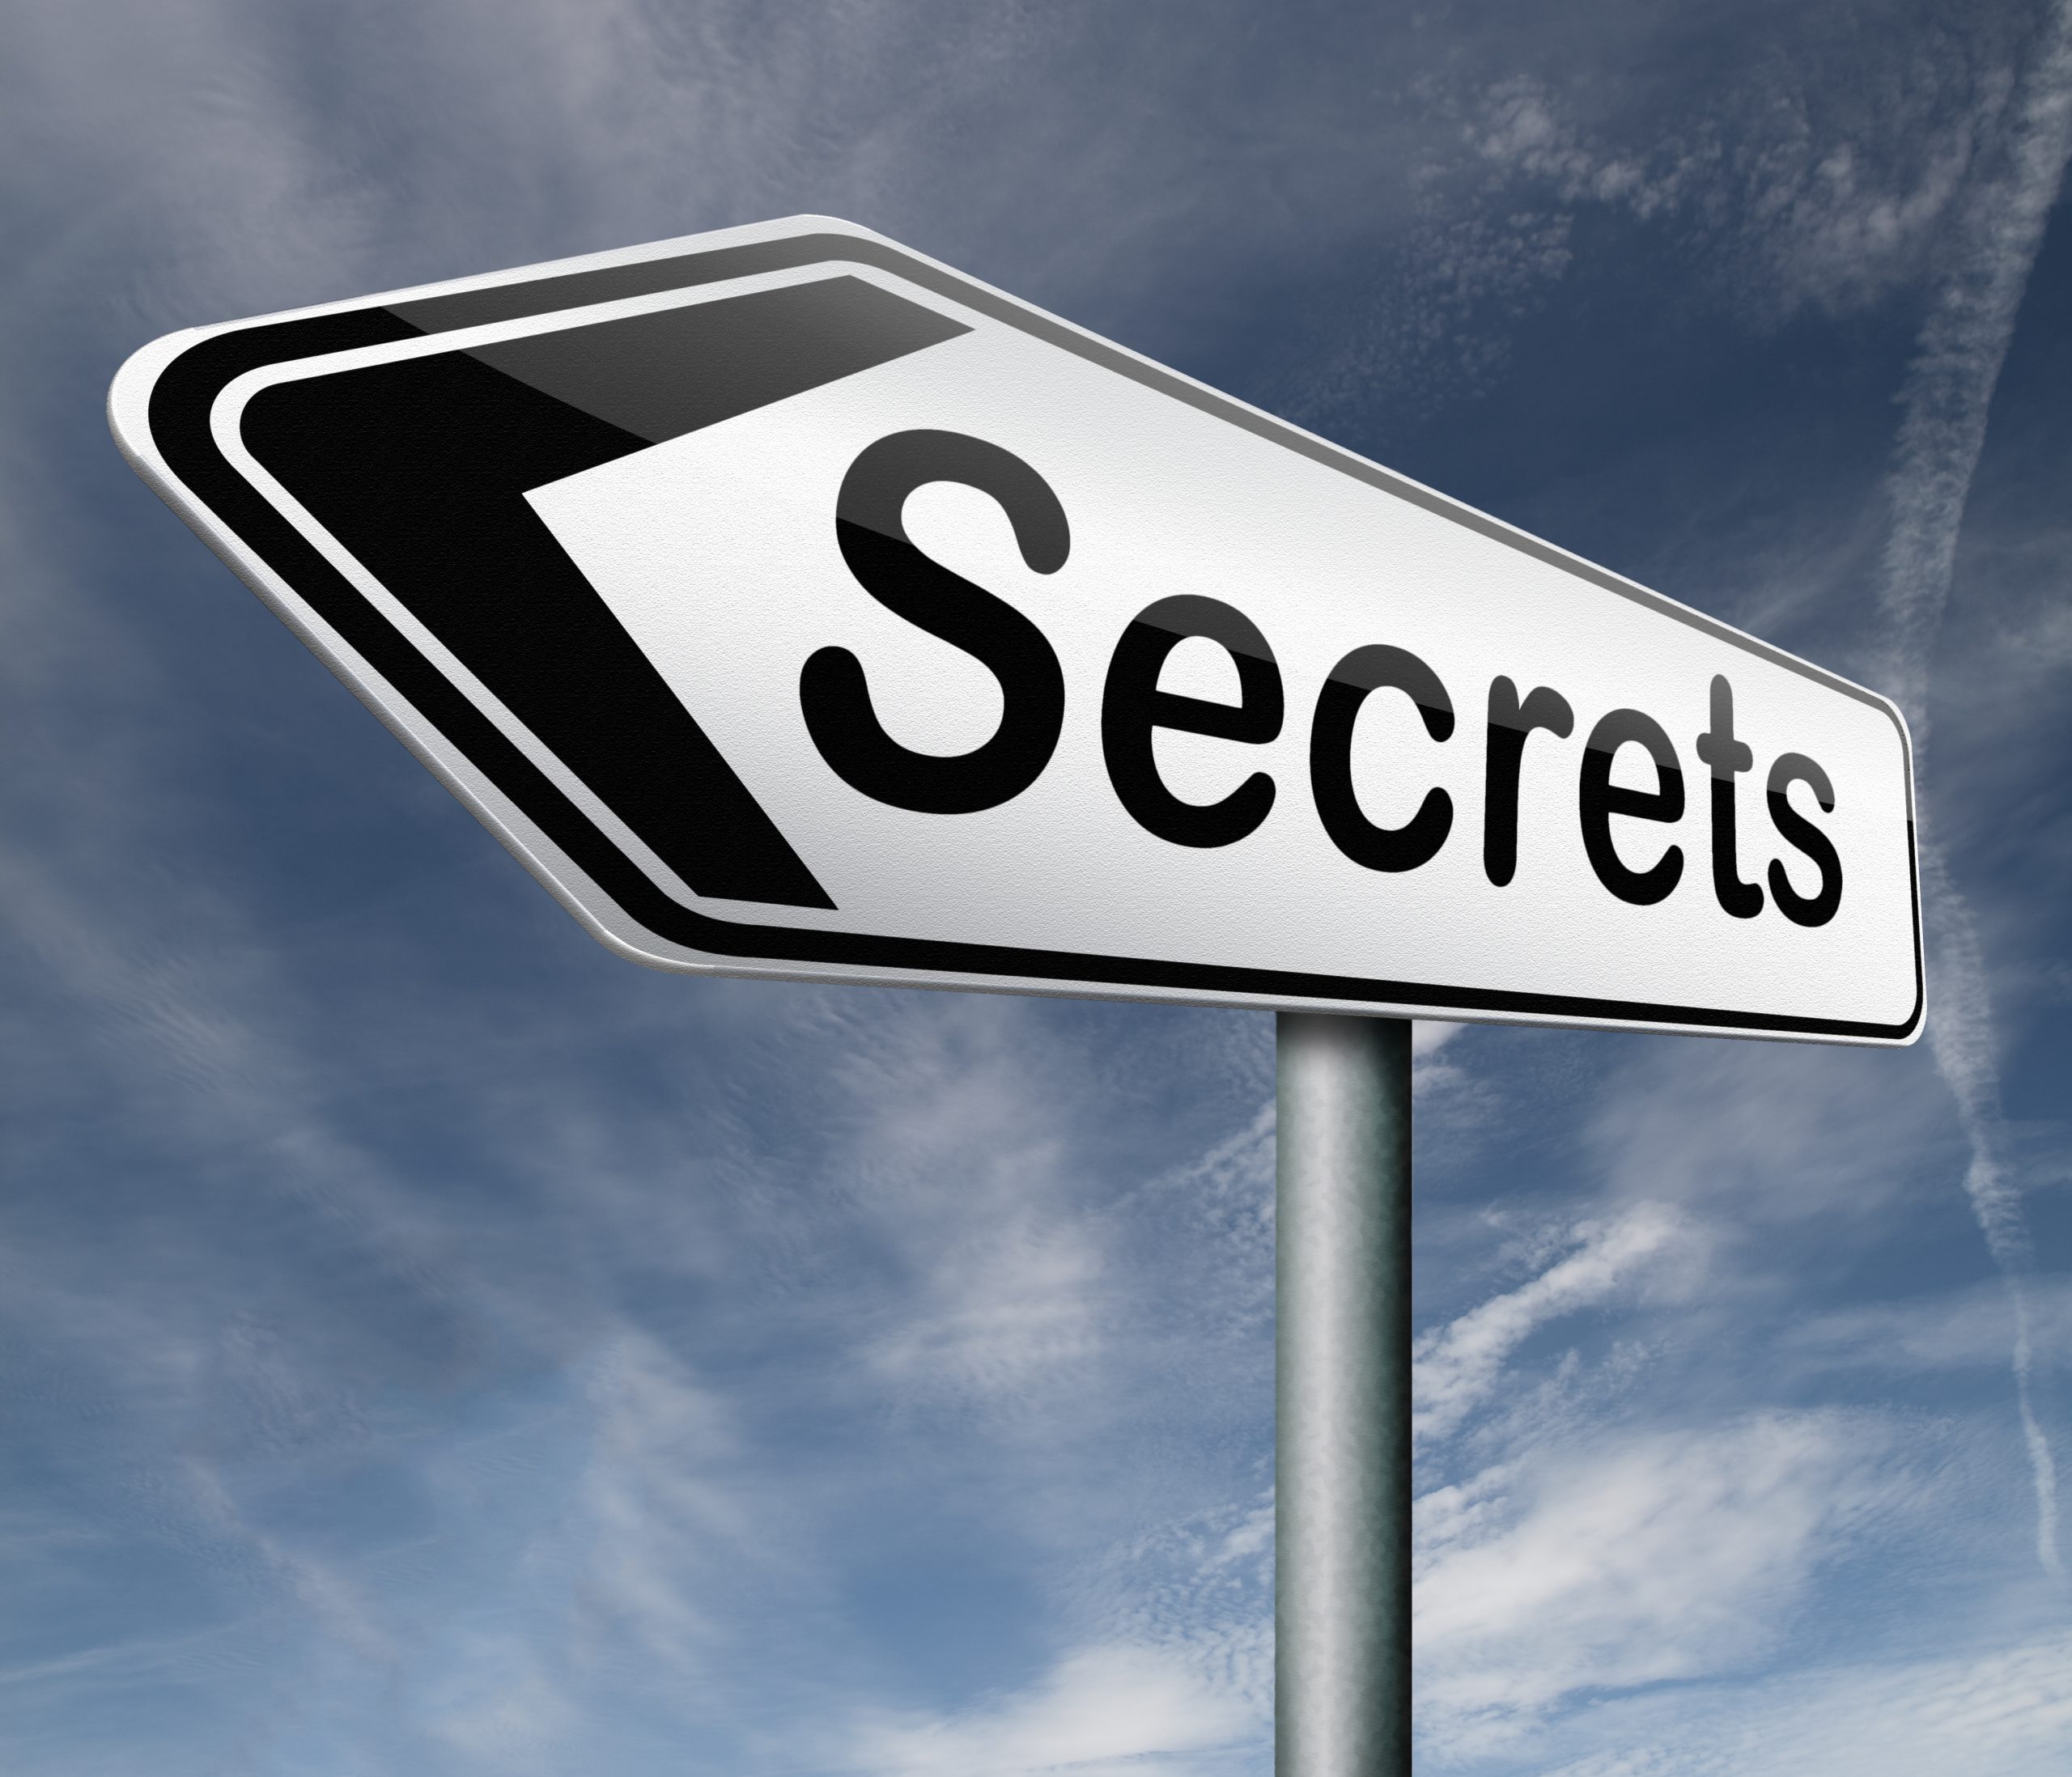 trade secrets - https://depositphotos.com/16636941/stock-photo-secret.html